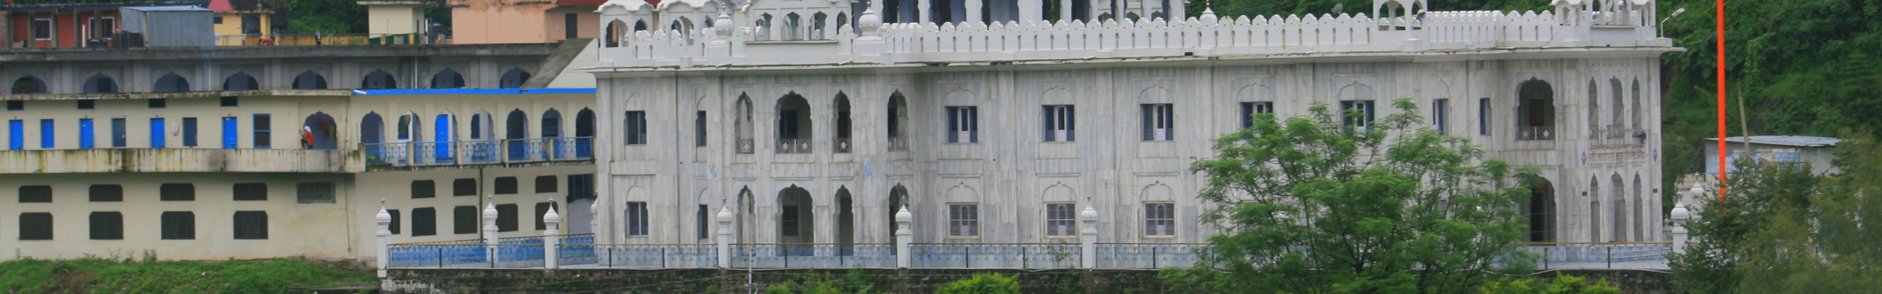 Gurudwara Rewalsar Sahib Himachal